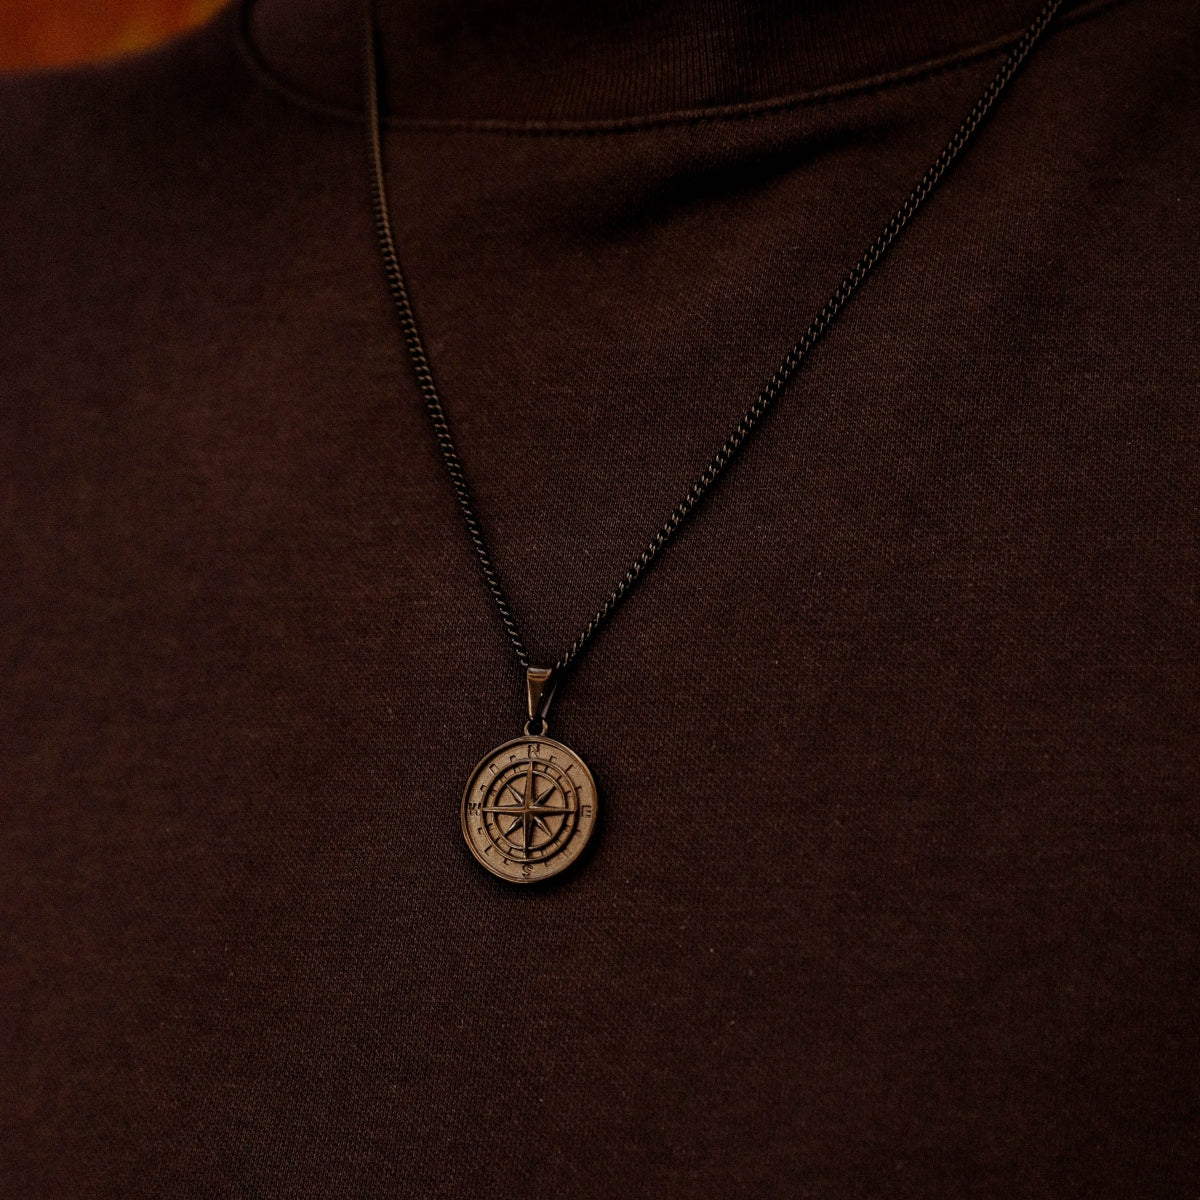 Black Compass Pendant Necklace